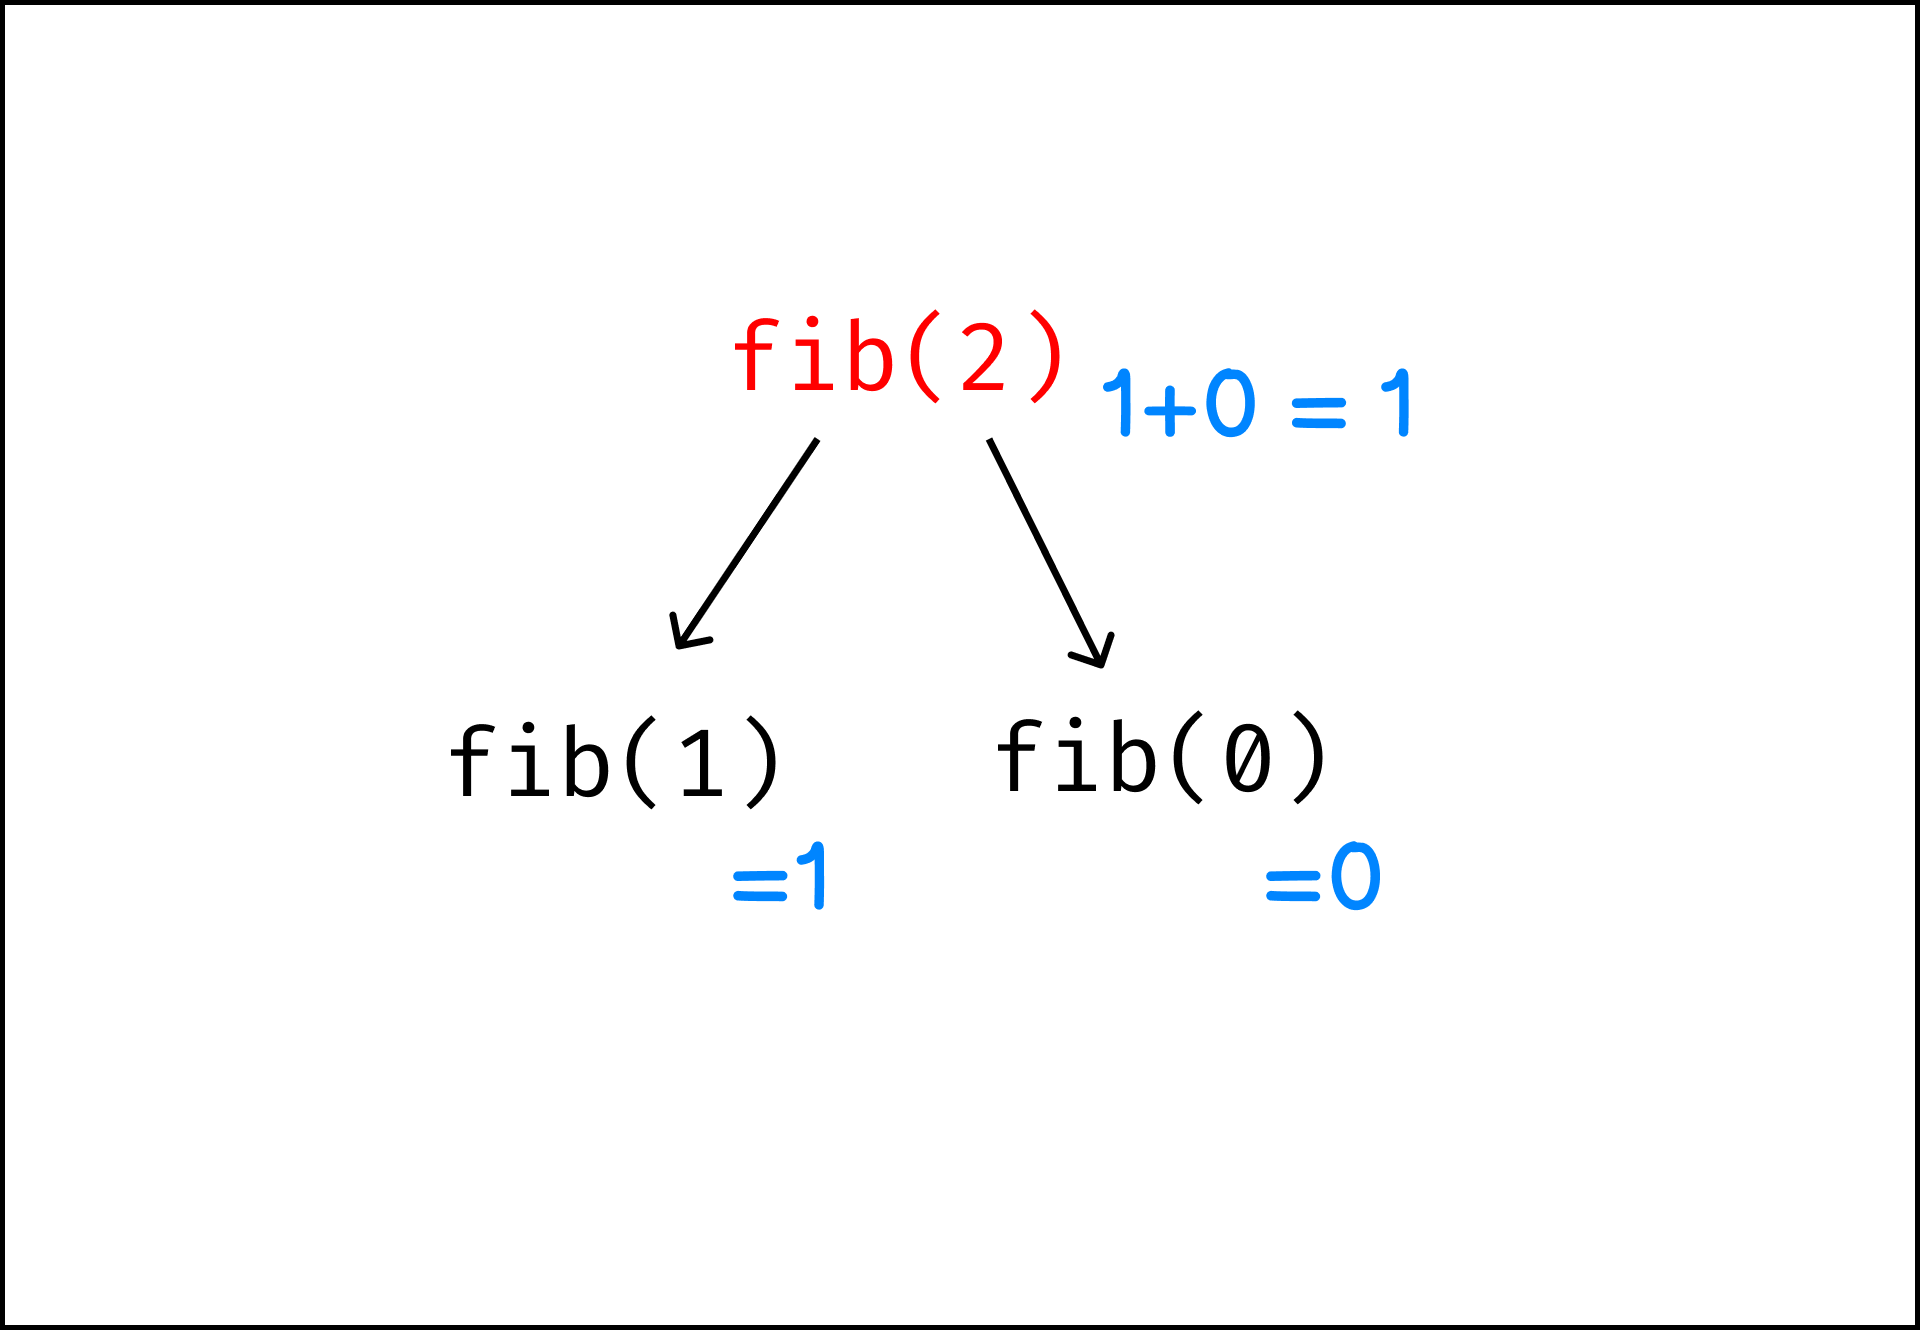 fib(2) process